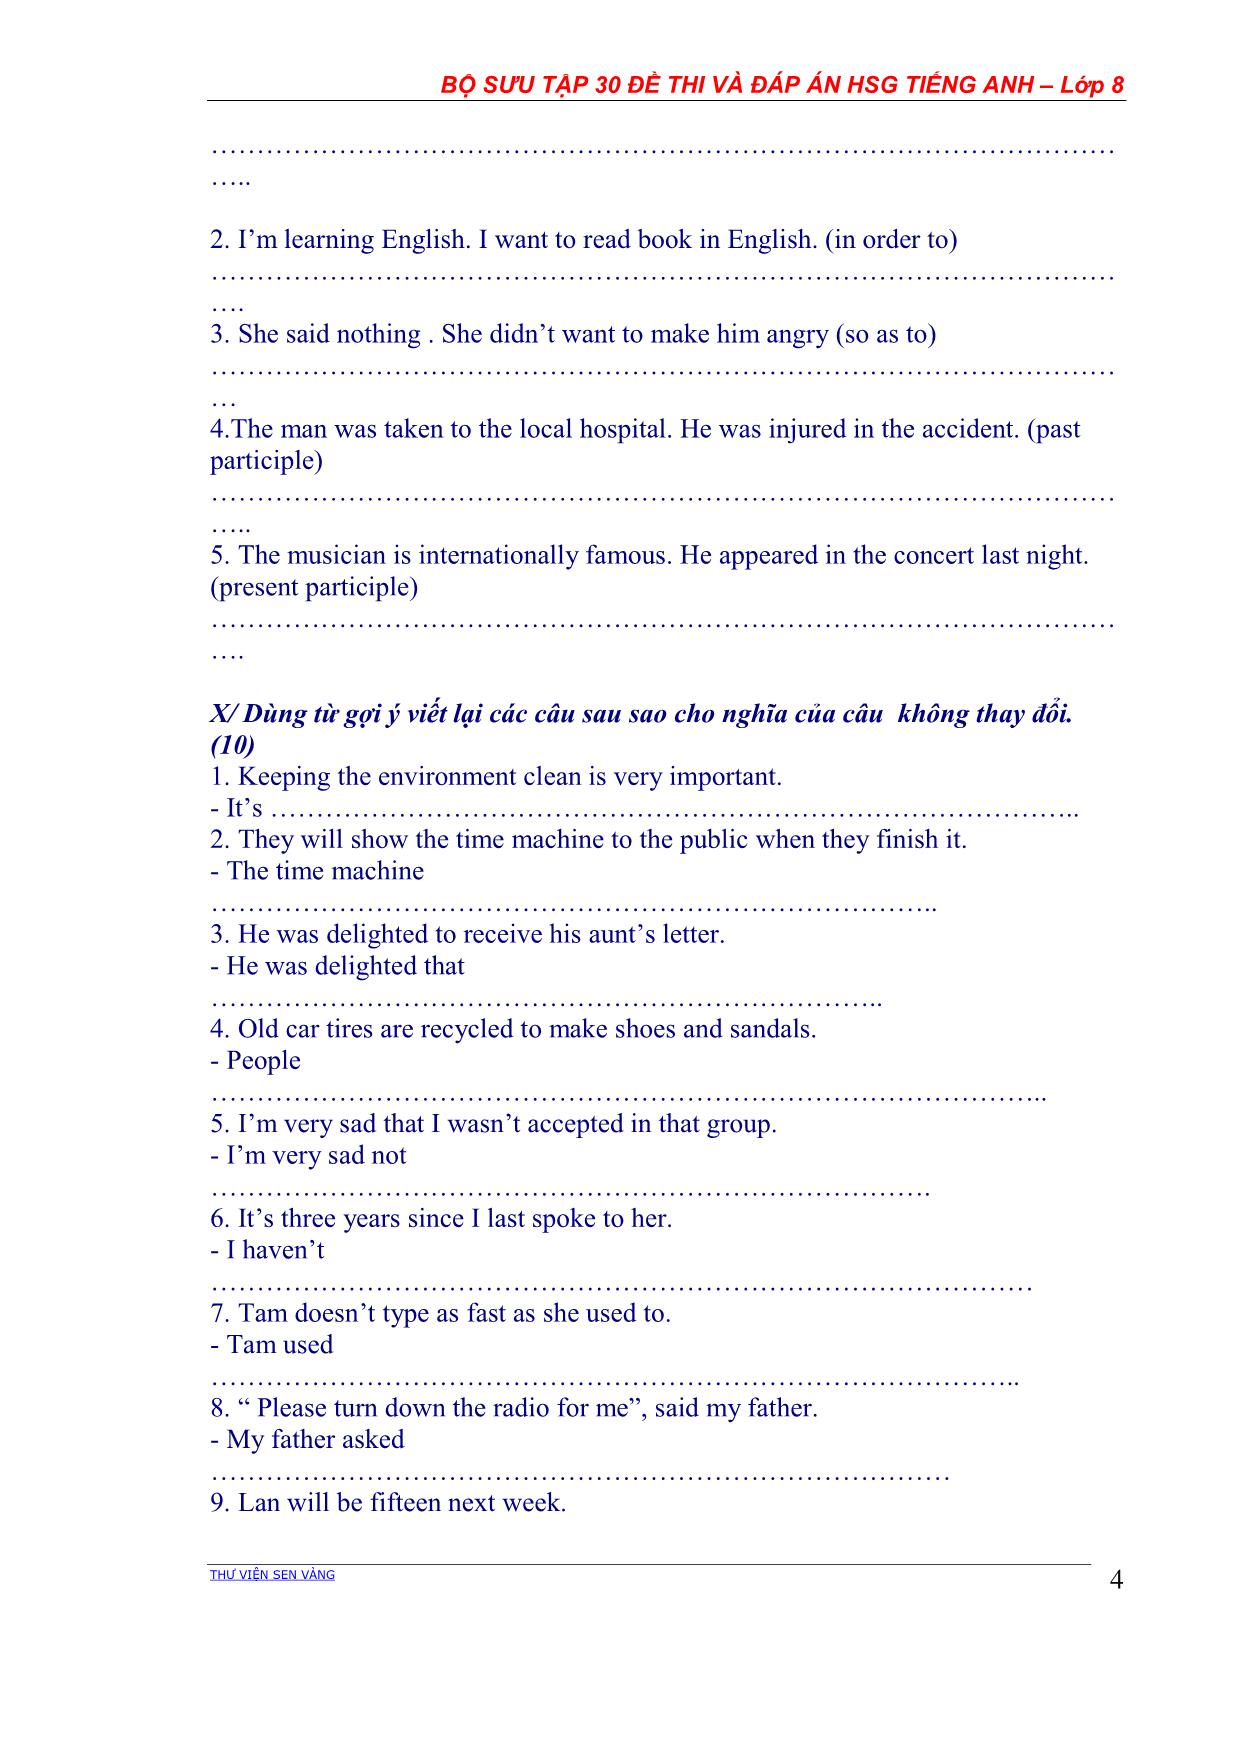 Bộ sưu tập 30 Đề thi học sinh giỏi môn Tiếng Anh Lớp 8 các năm học (Có đáp án) trang 4